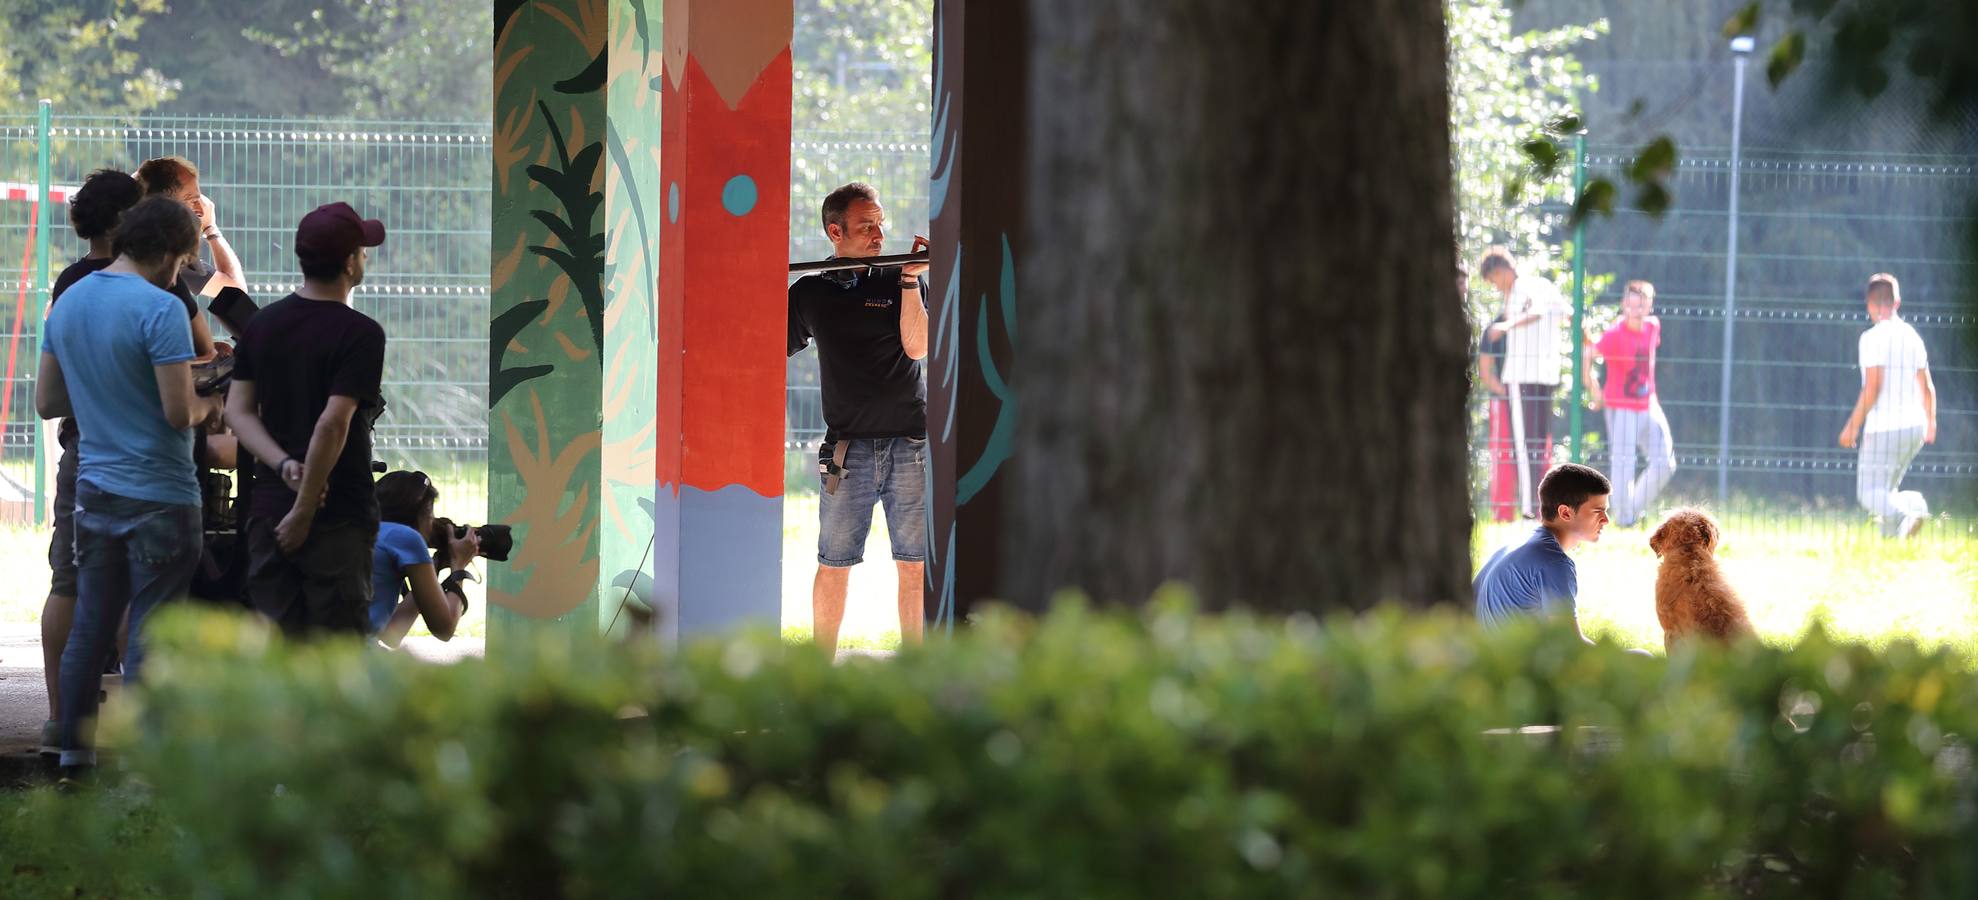 El cineasta Daniel Sánchez Arévalo ha rodado esta semana en Viérnoles, donde se recreó un centro de menores